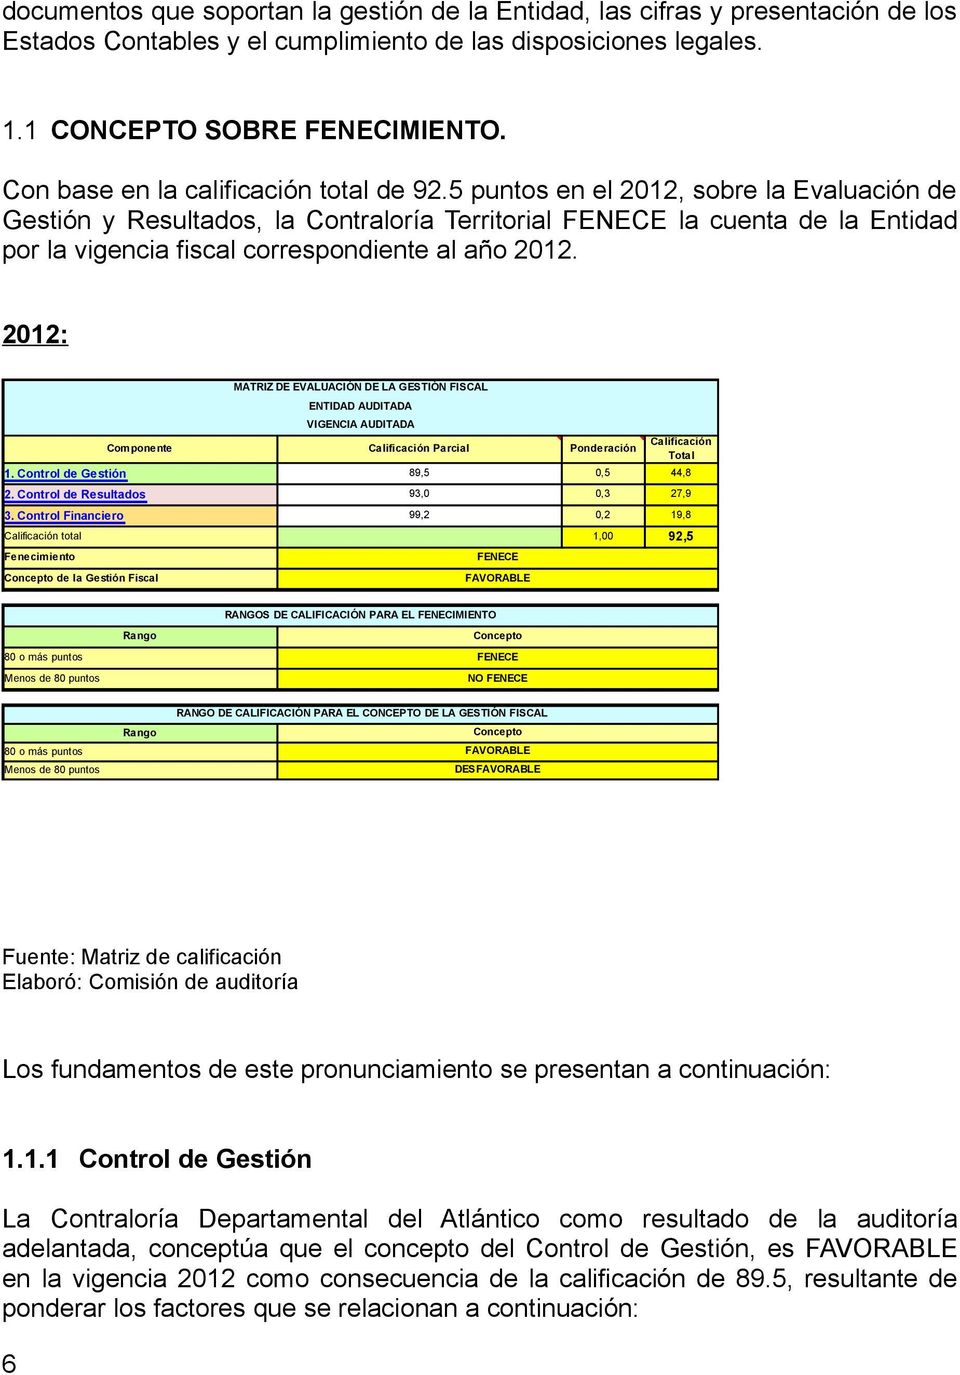 5 puntos en el 2012, sobre la Evaluación de Gestión y Resultados, la Contraloría Territorial FENECE la cuenta de la Entidad por la vigencia fiscal correspondiente al año 2012.